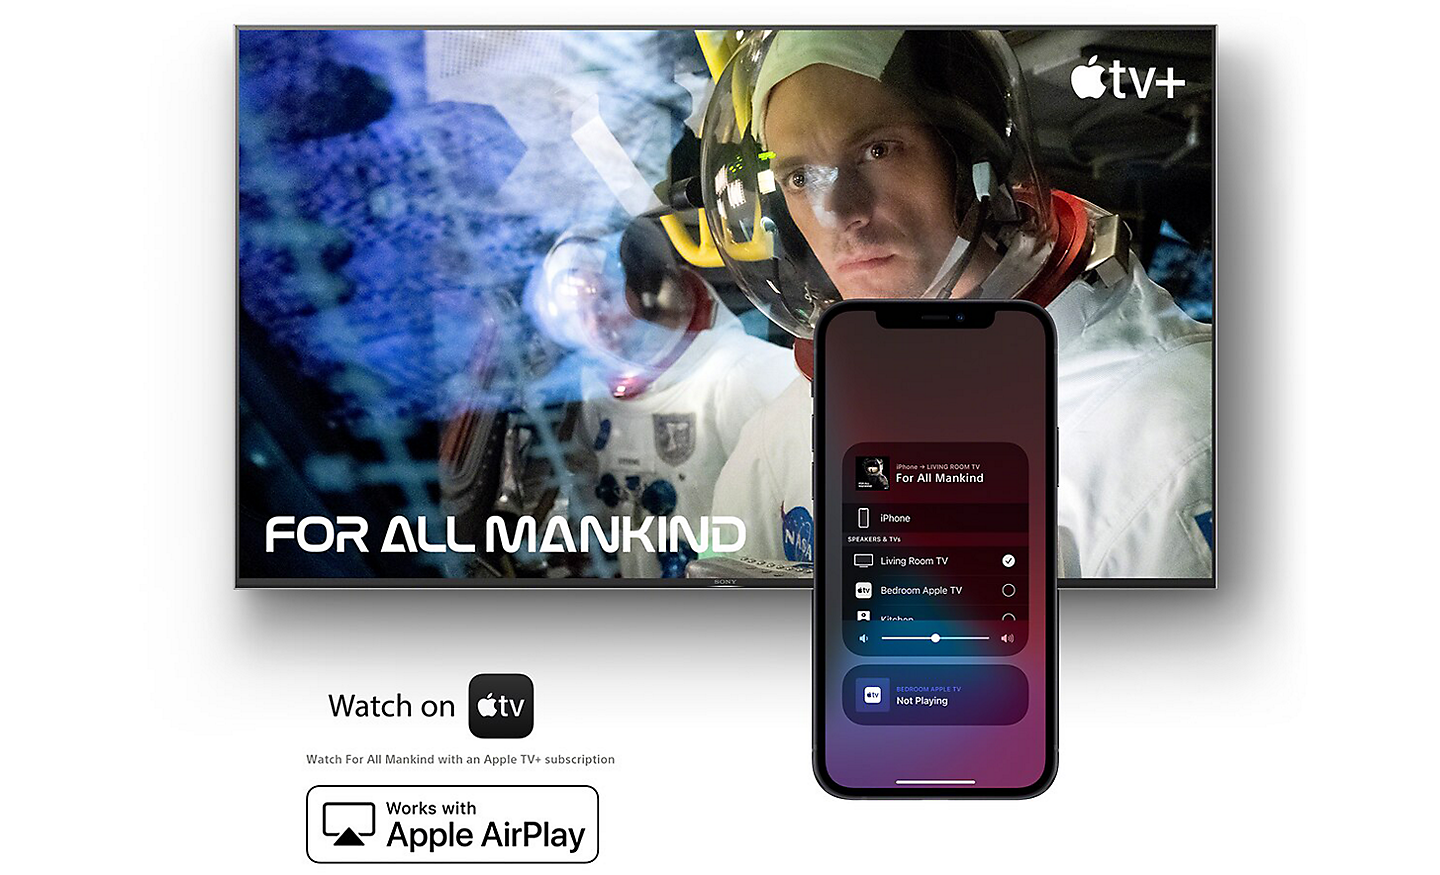 Zaslon prikazuje nadaljevanko For All Mankind na Apple TV s pametnim telefonom spredaj in logotipoma za »Watch on Apple TV« in »Works with Apple AirPlay« spodaj